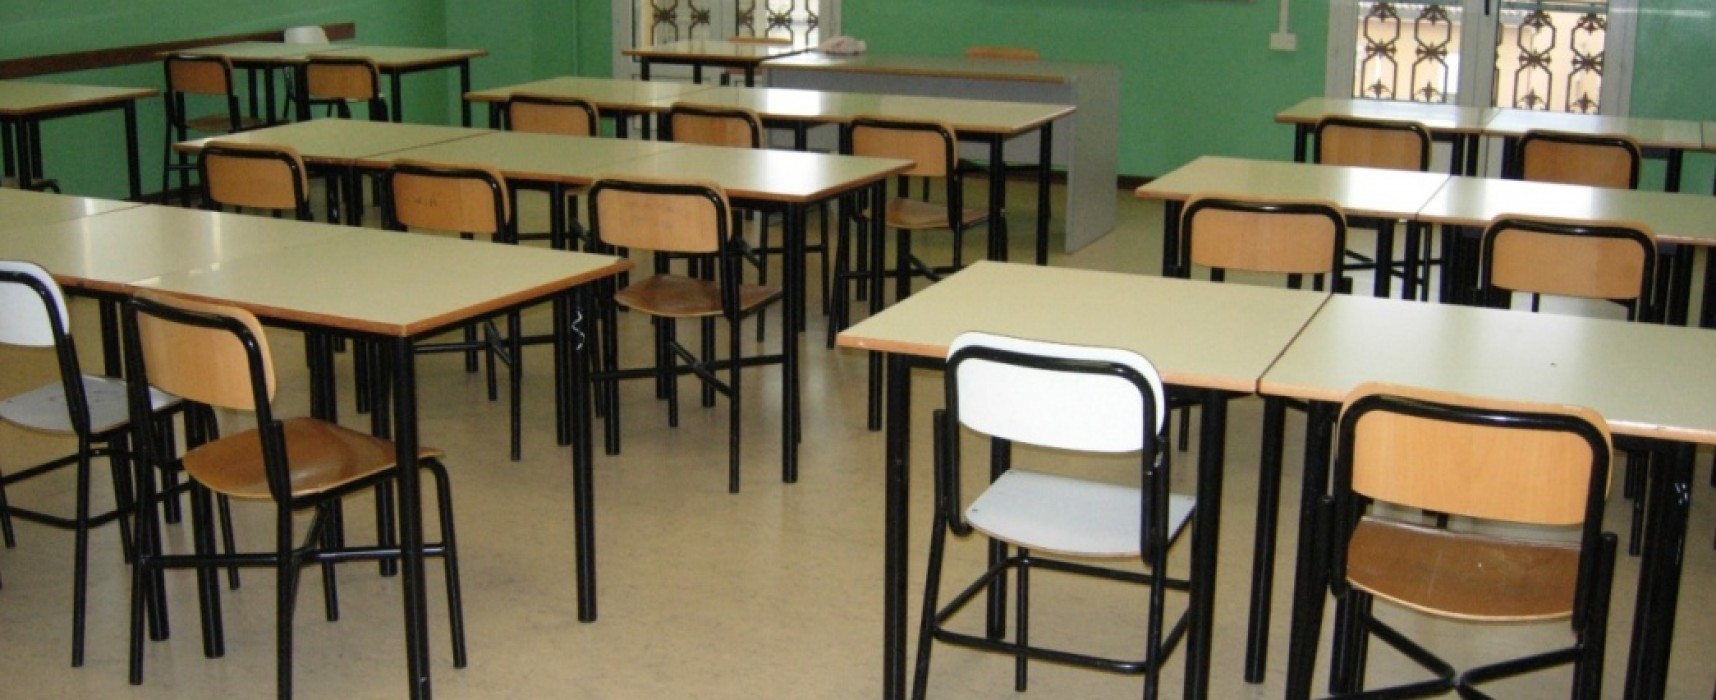 Finanziamenti alle scuole, 368.497 euro a Bisceglie: Spina plaude al governo